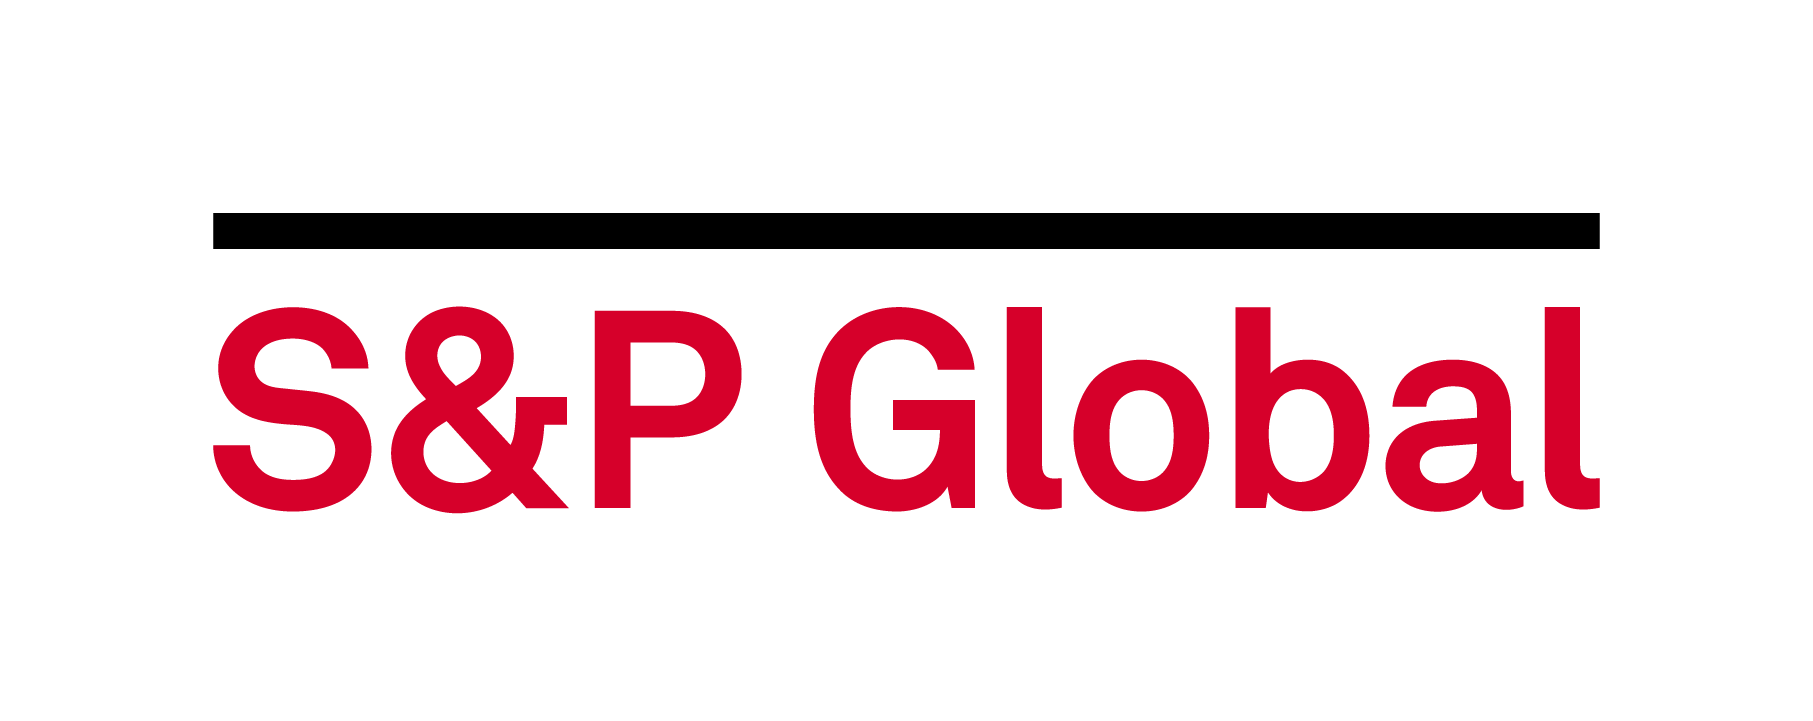 Компании s p. S&P Global. S&P Global Platts. S&P логотип. Standard poor's логотип.